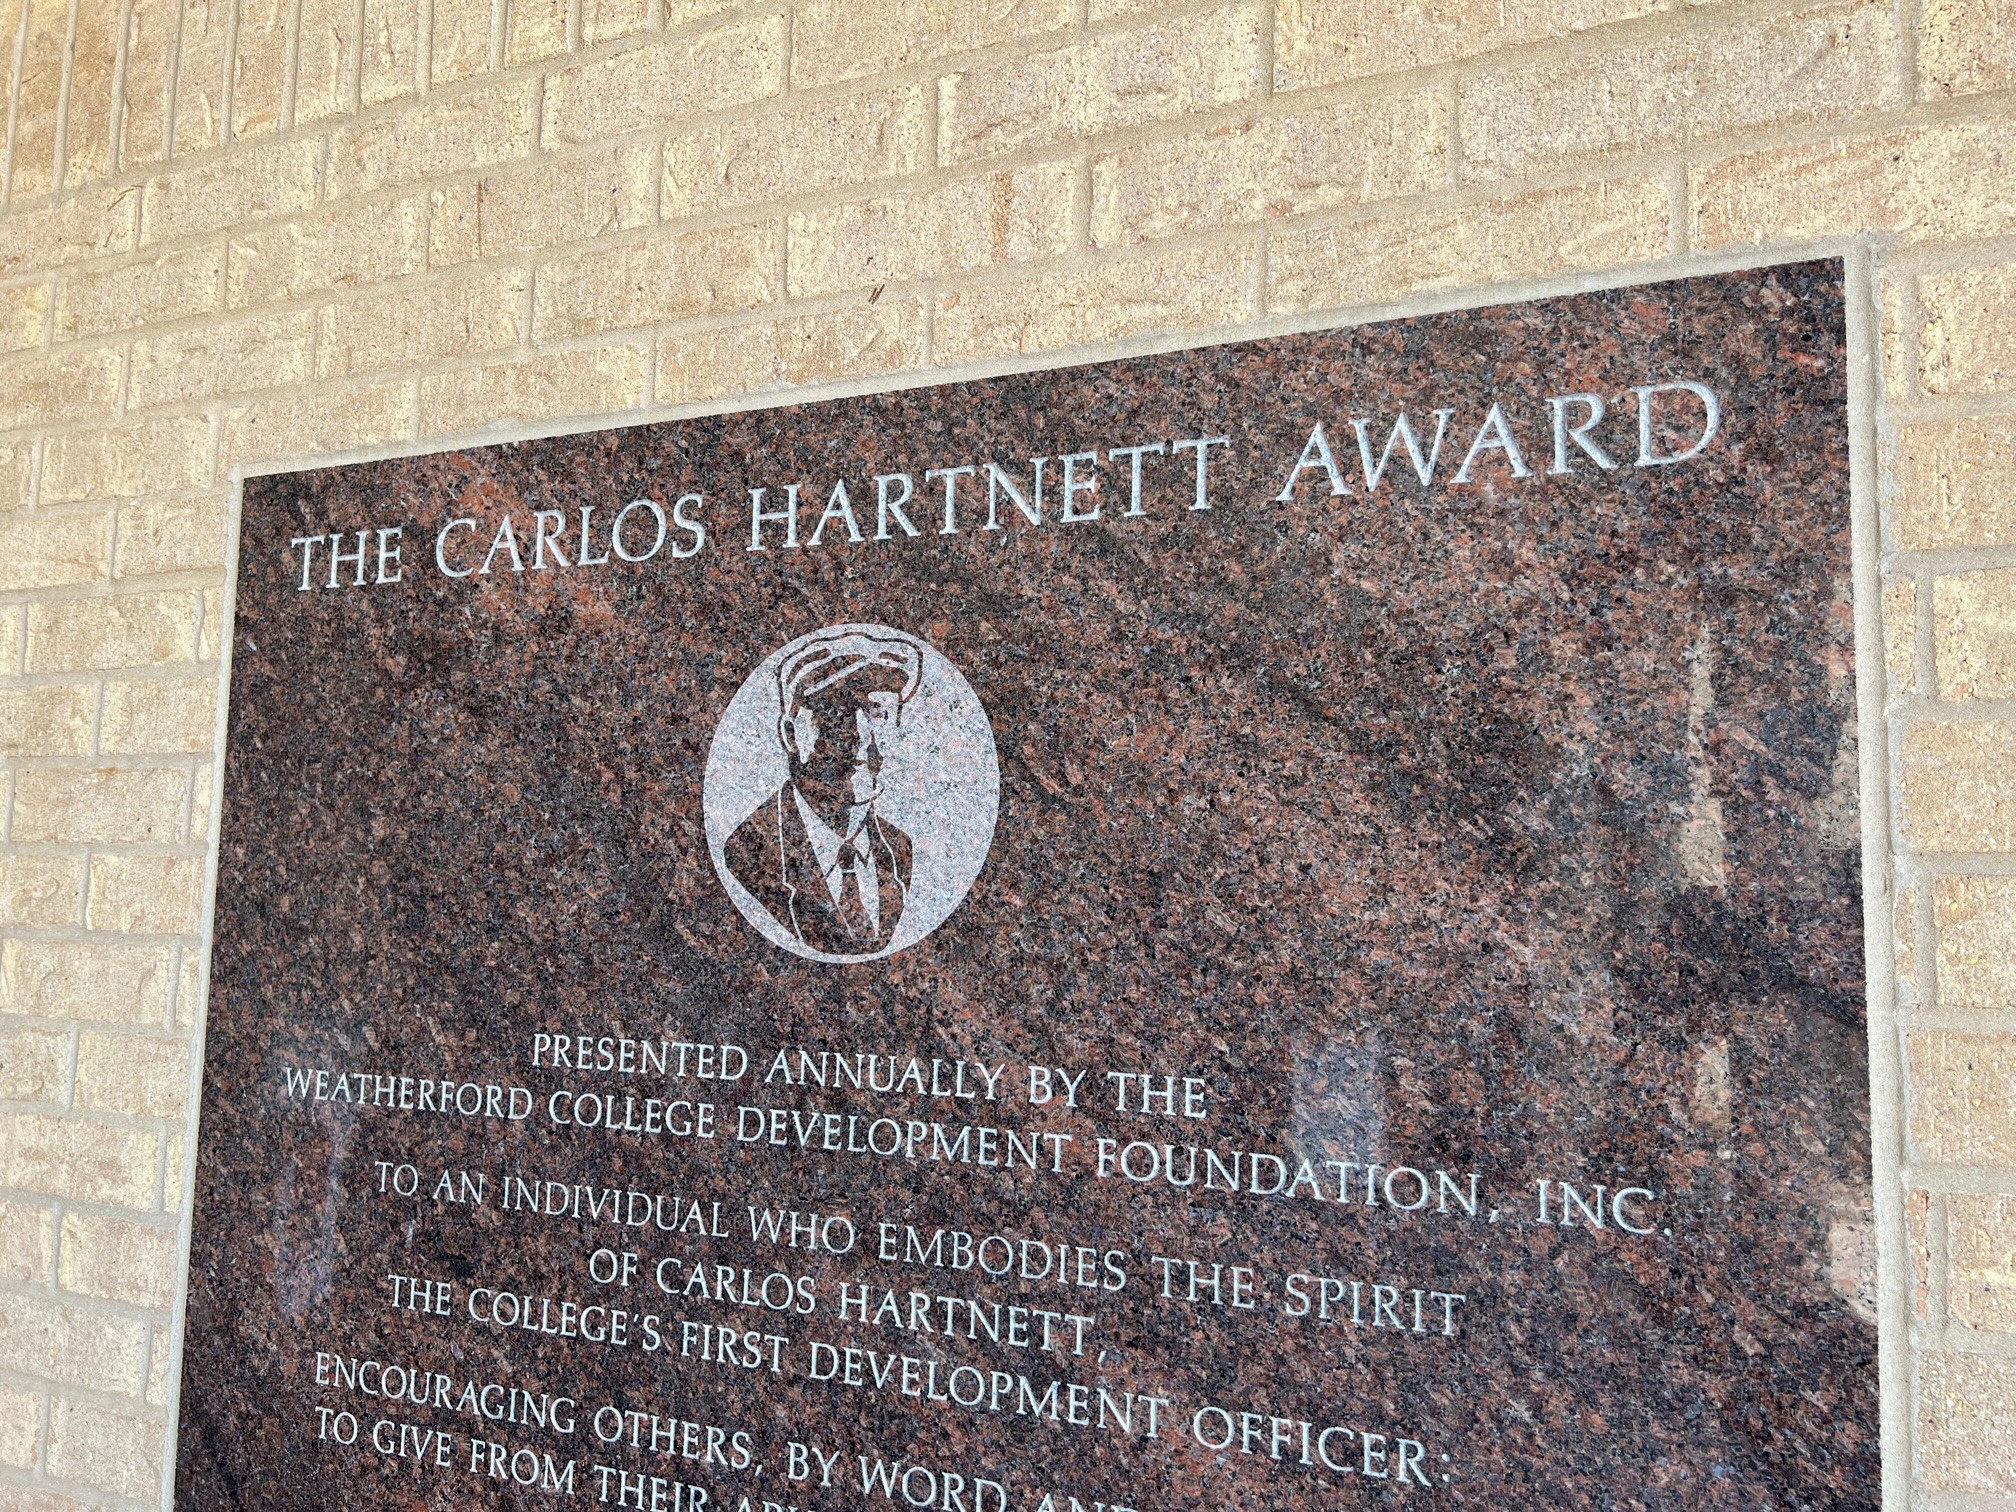 Carlos Hartnett Award plaque